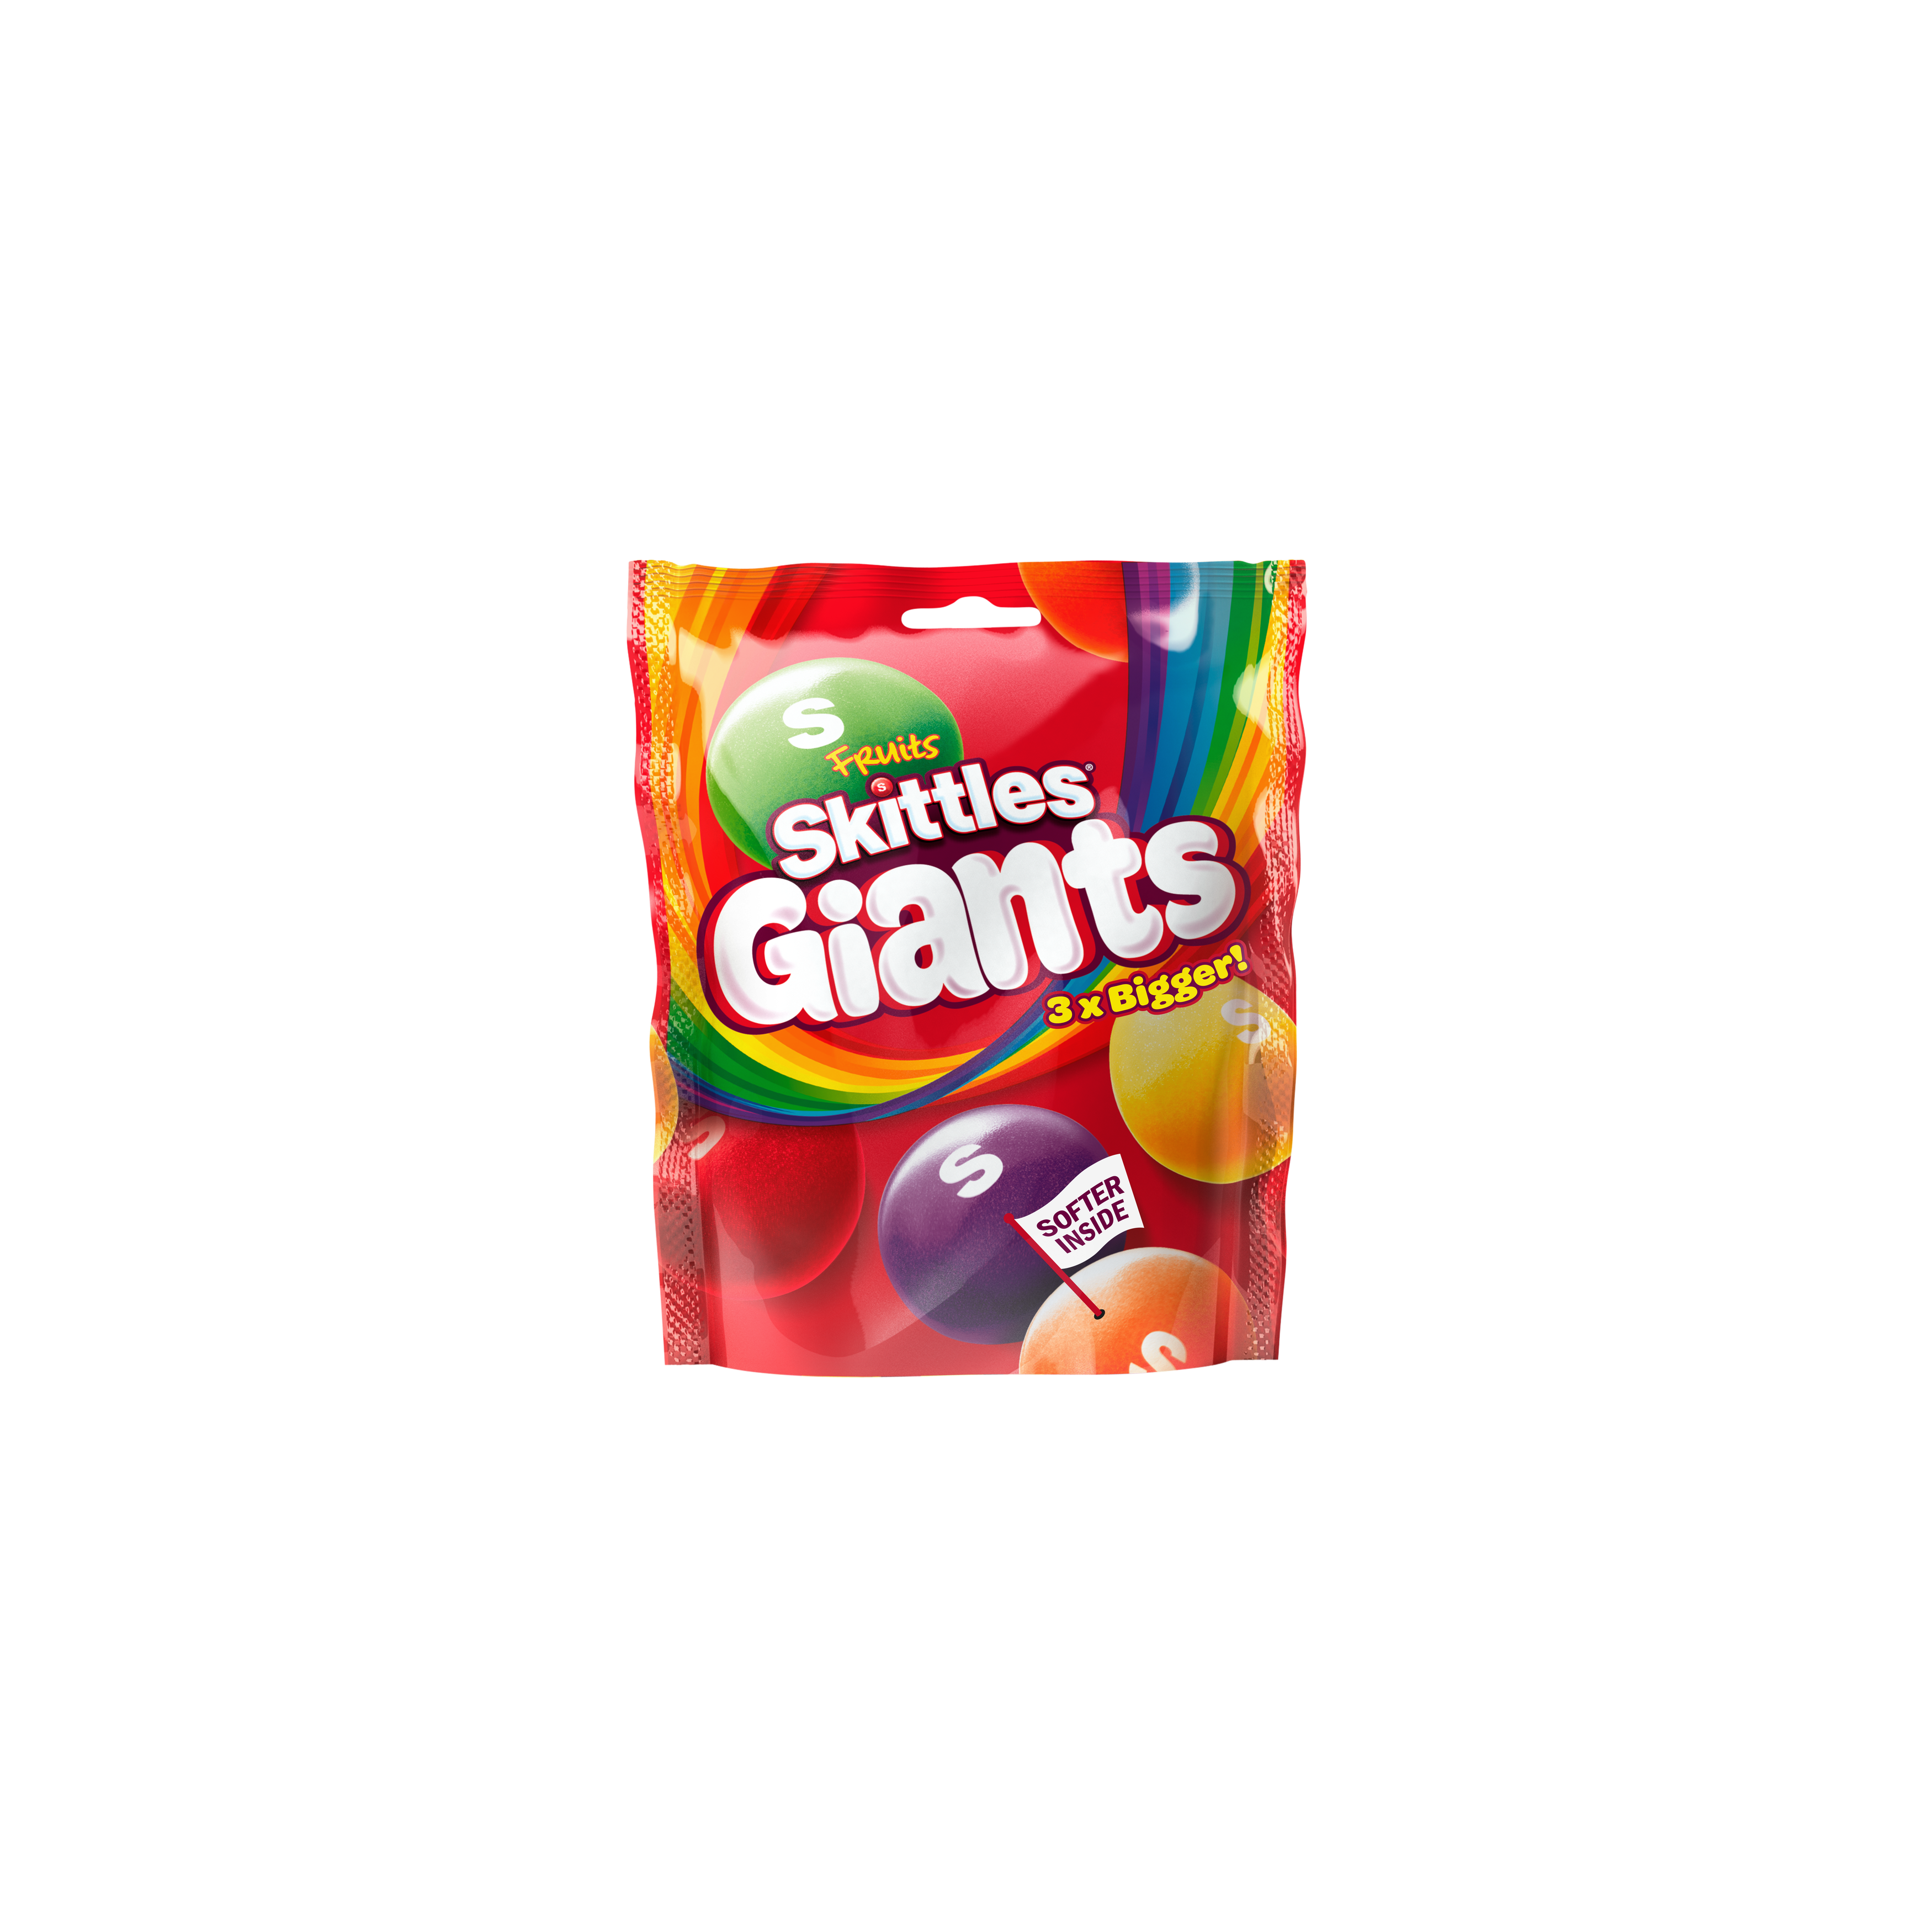 Skittles Original – Candy Floss Land